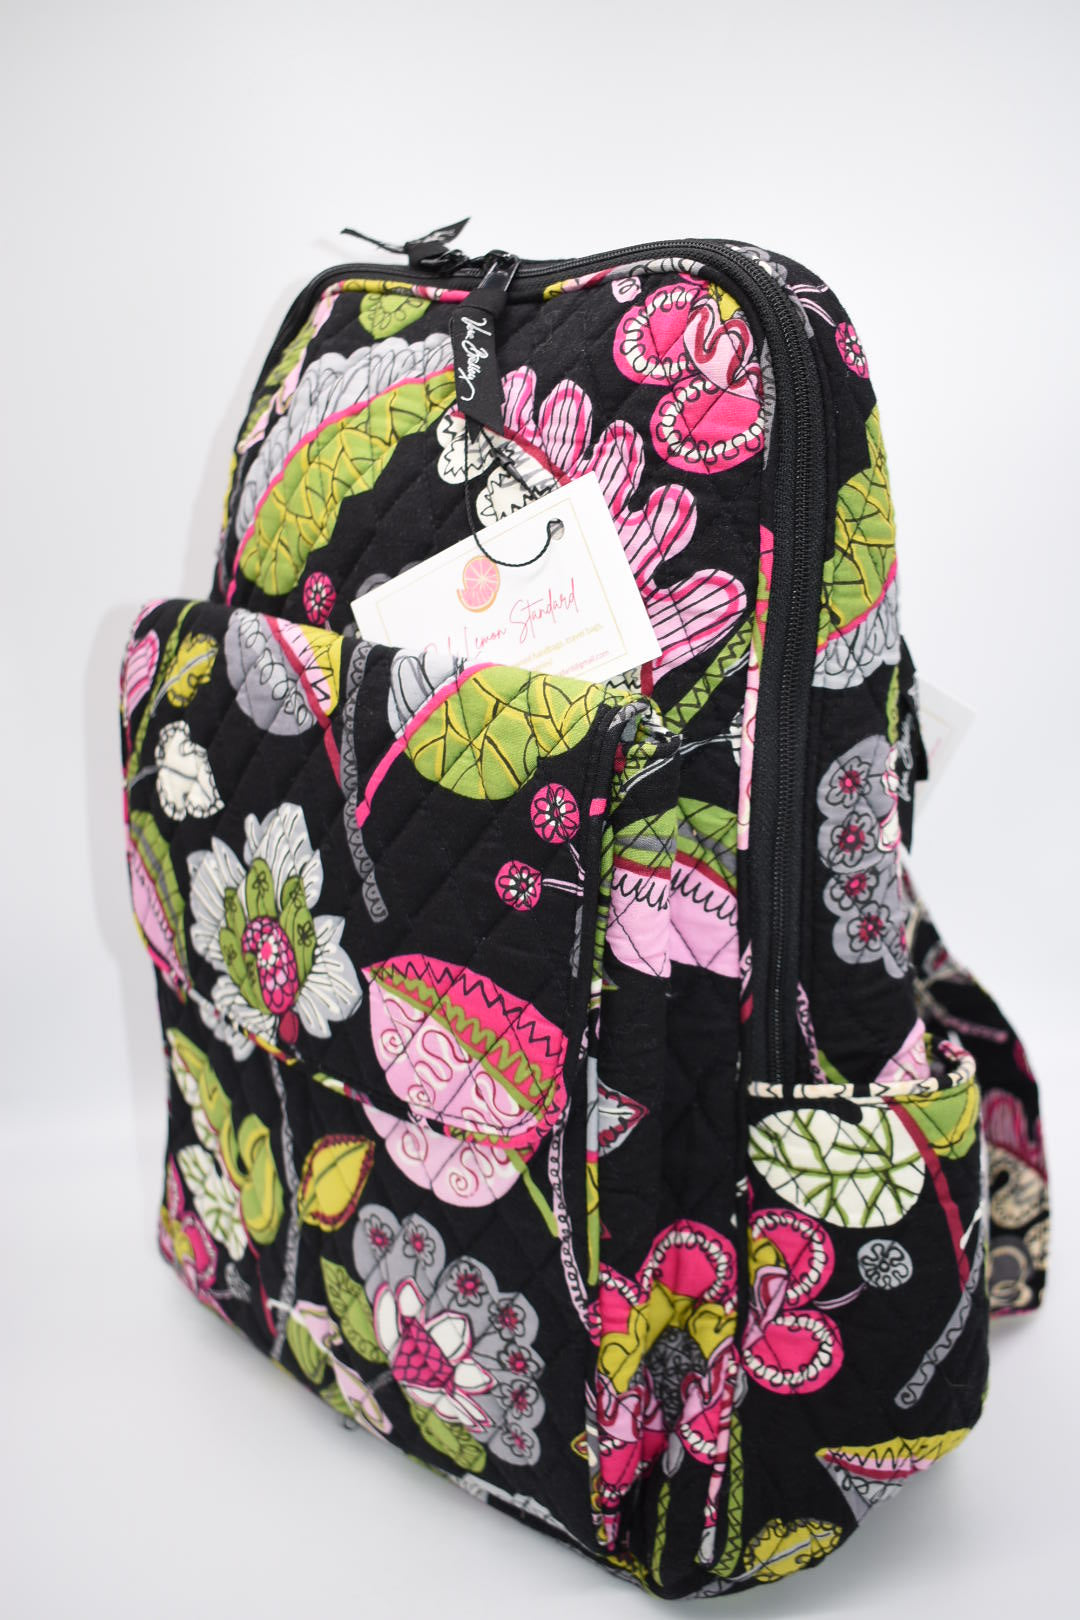 Vera Bradley Ultimate Backpack in "Moon Blooms" Pattern